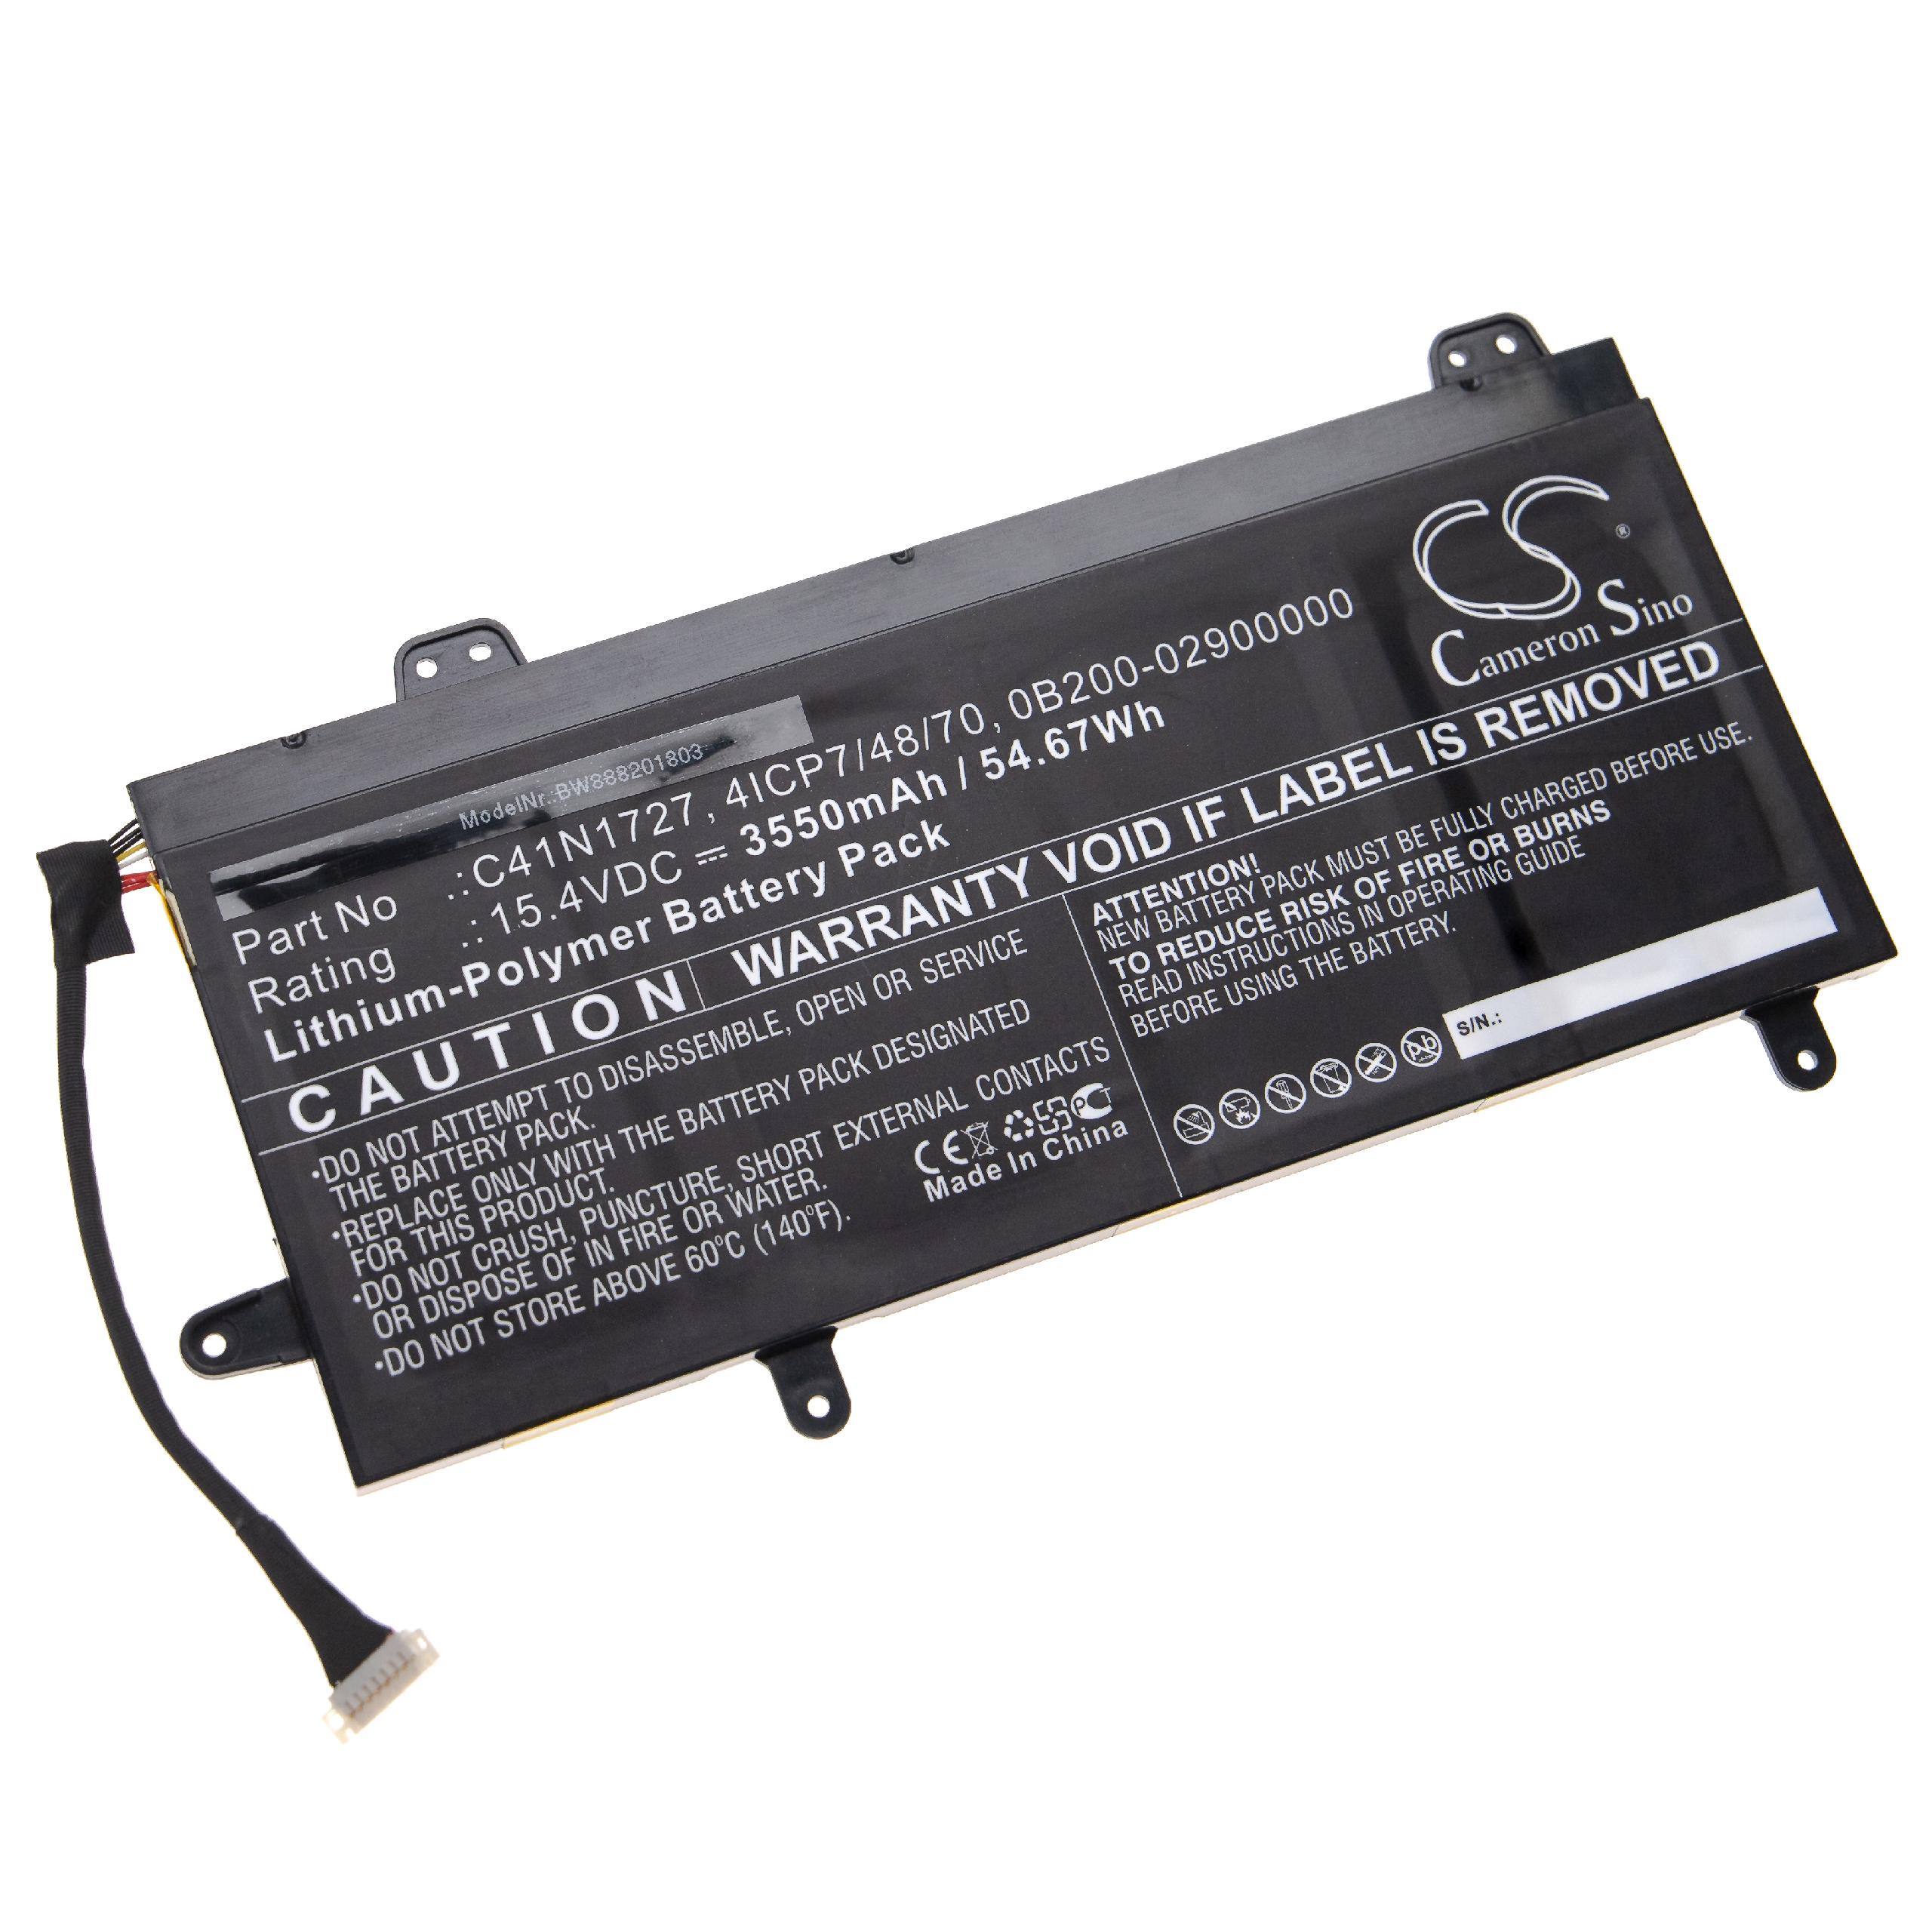 Batteria sostituisce Asus C41N1727, 4ICP7/48/70, 0B200-02900000 per notebook Asus - 3550mAh 15,4V Li-Poly